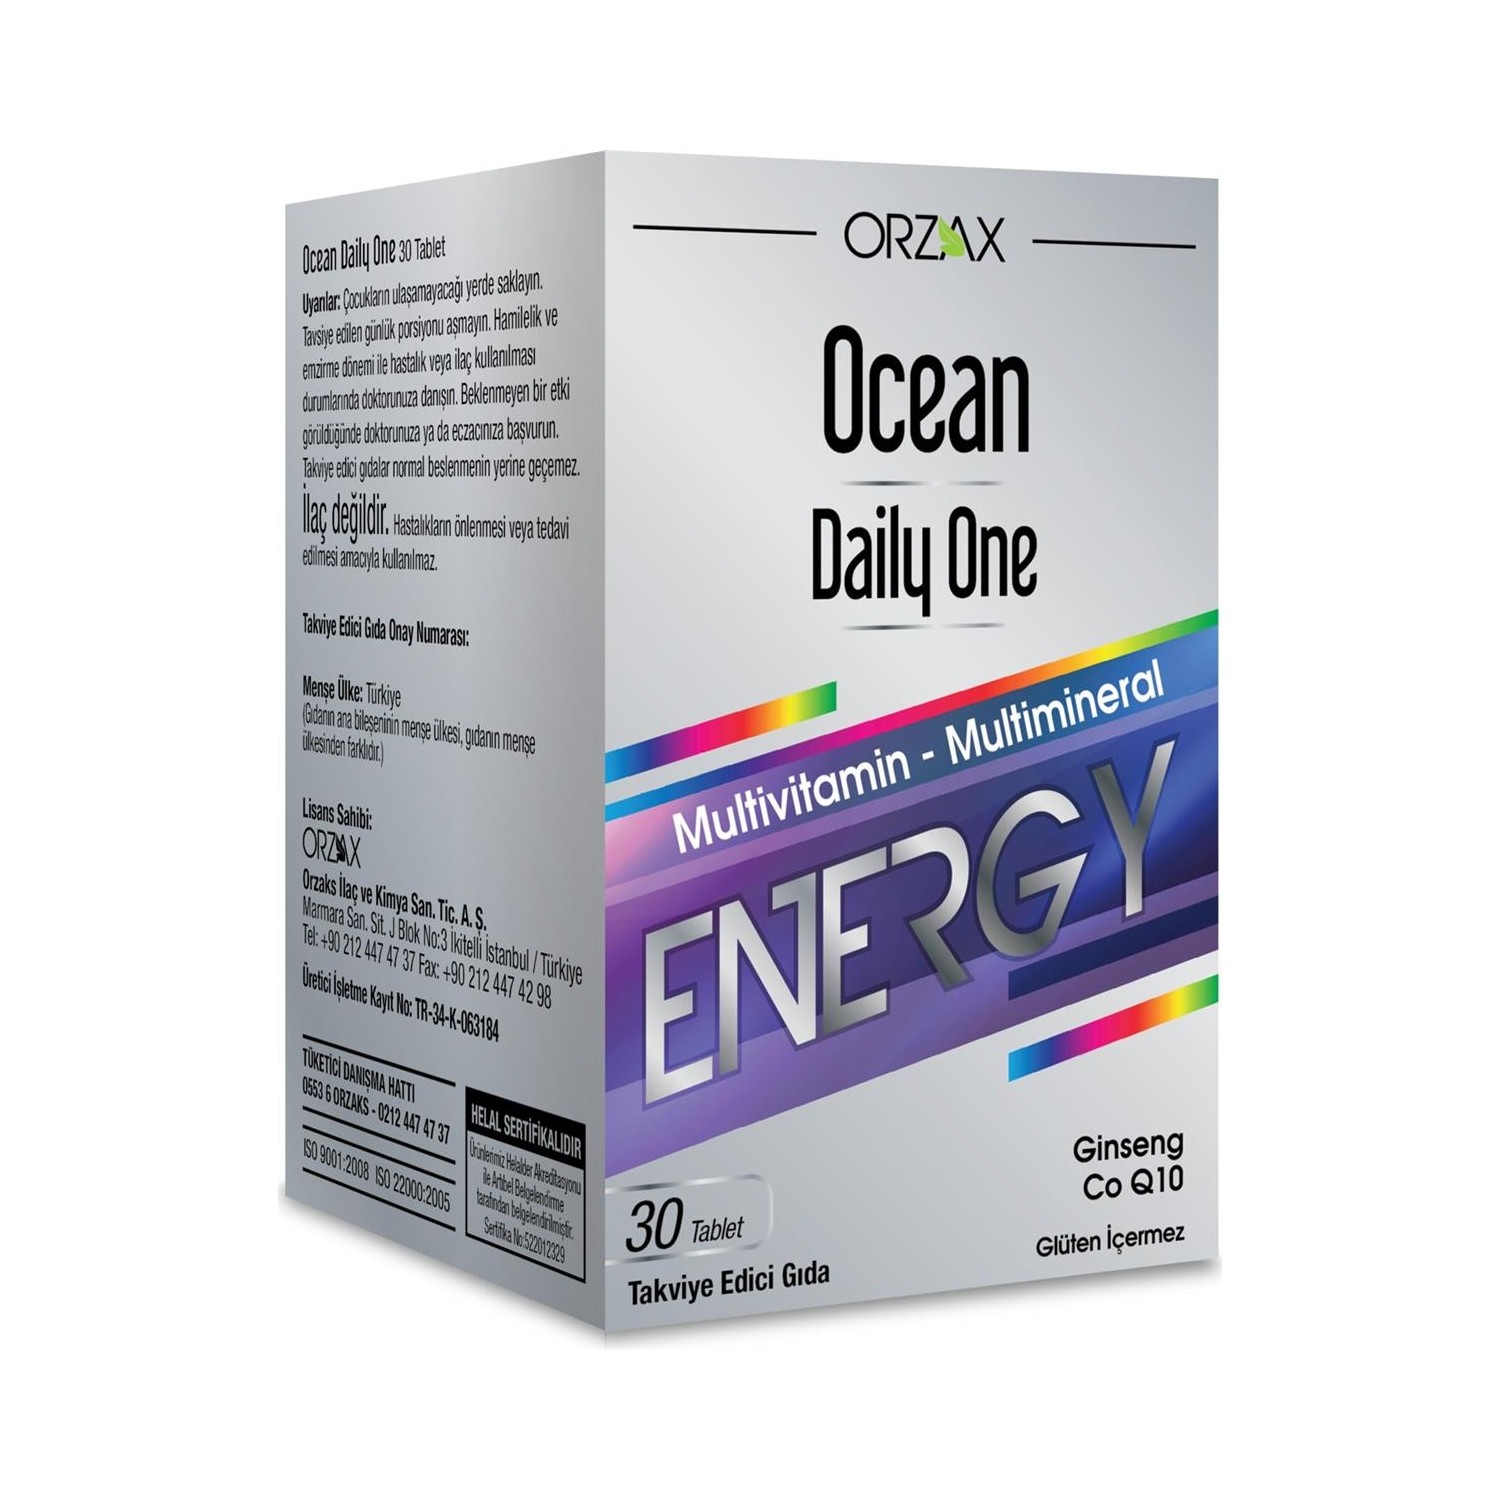 магний в6 антистресс 30 таблеток по 600 мг Активная добавка Ocean Daily One Energy, 30 таблеток